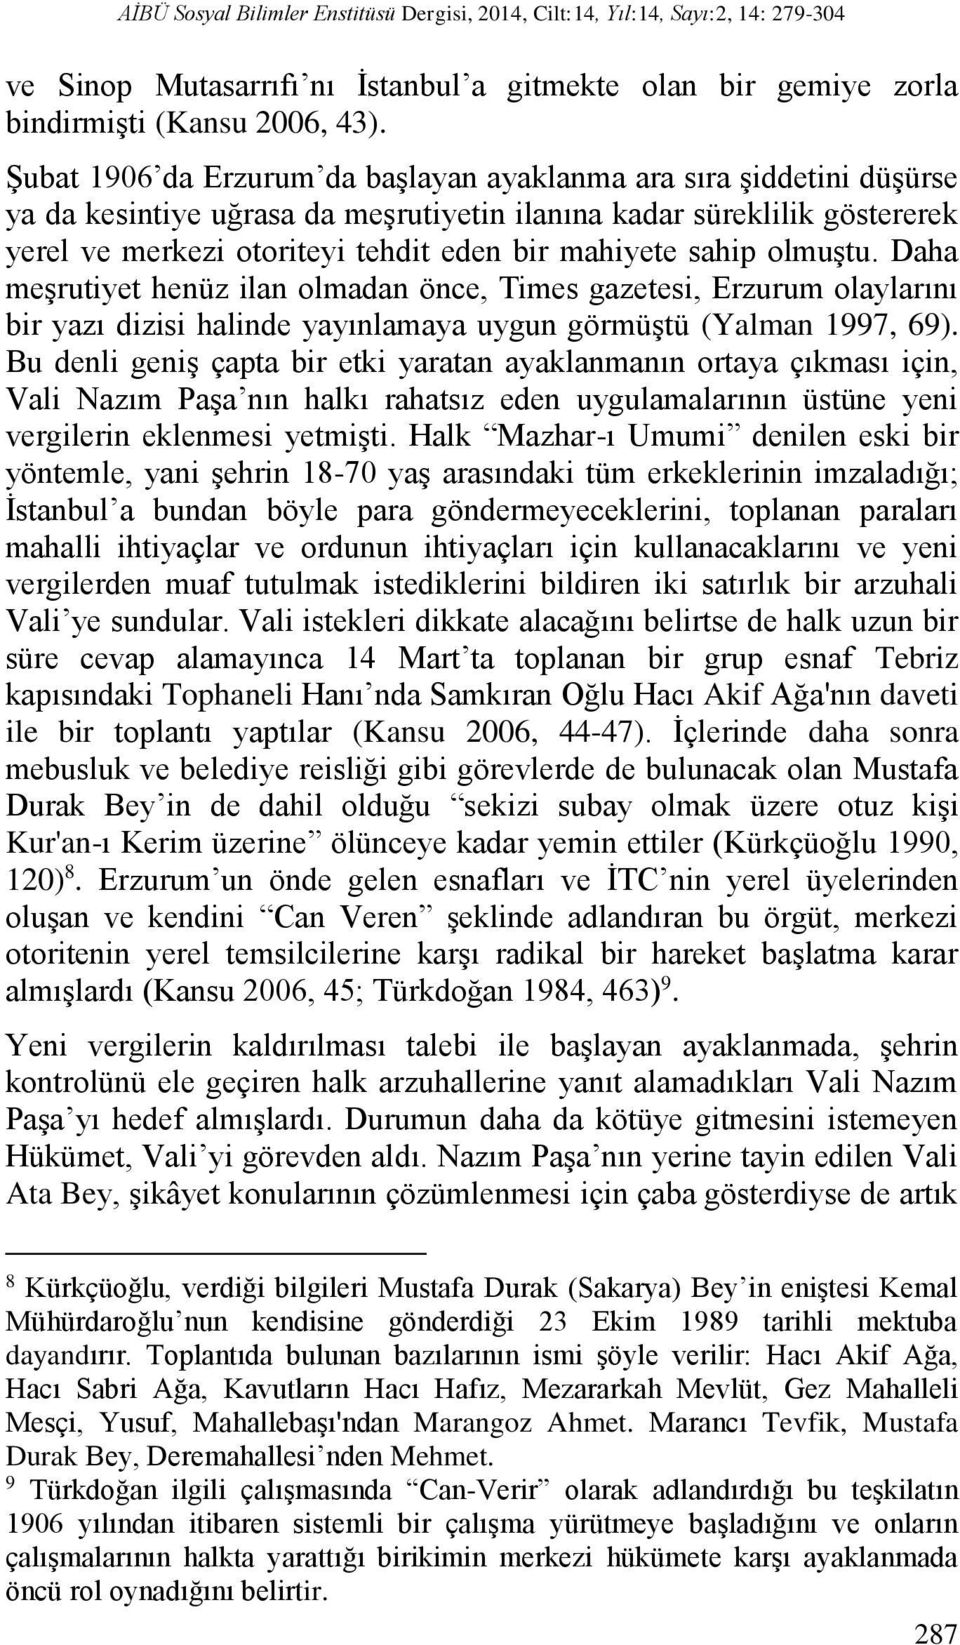 sahip olmuştu. Daha meşrutiyet henüz ilan olmadan önce, Times gazetesi, Erzurum olaylarını bir yazı dizisi halinde yayınlamaya uygun görmüştü (Yalman 1997, 69).